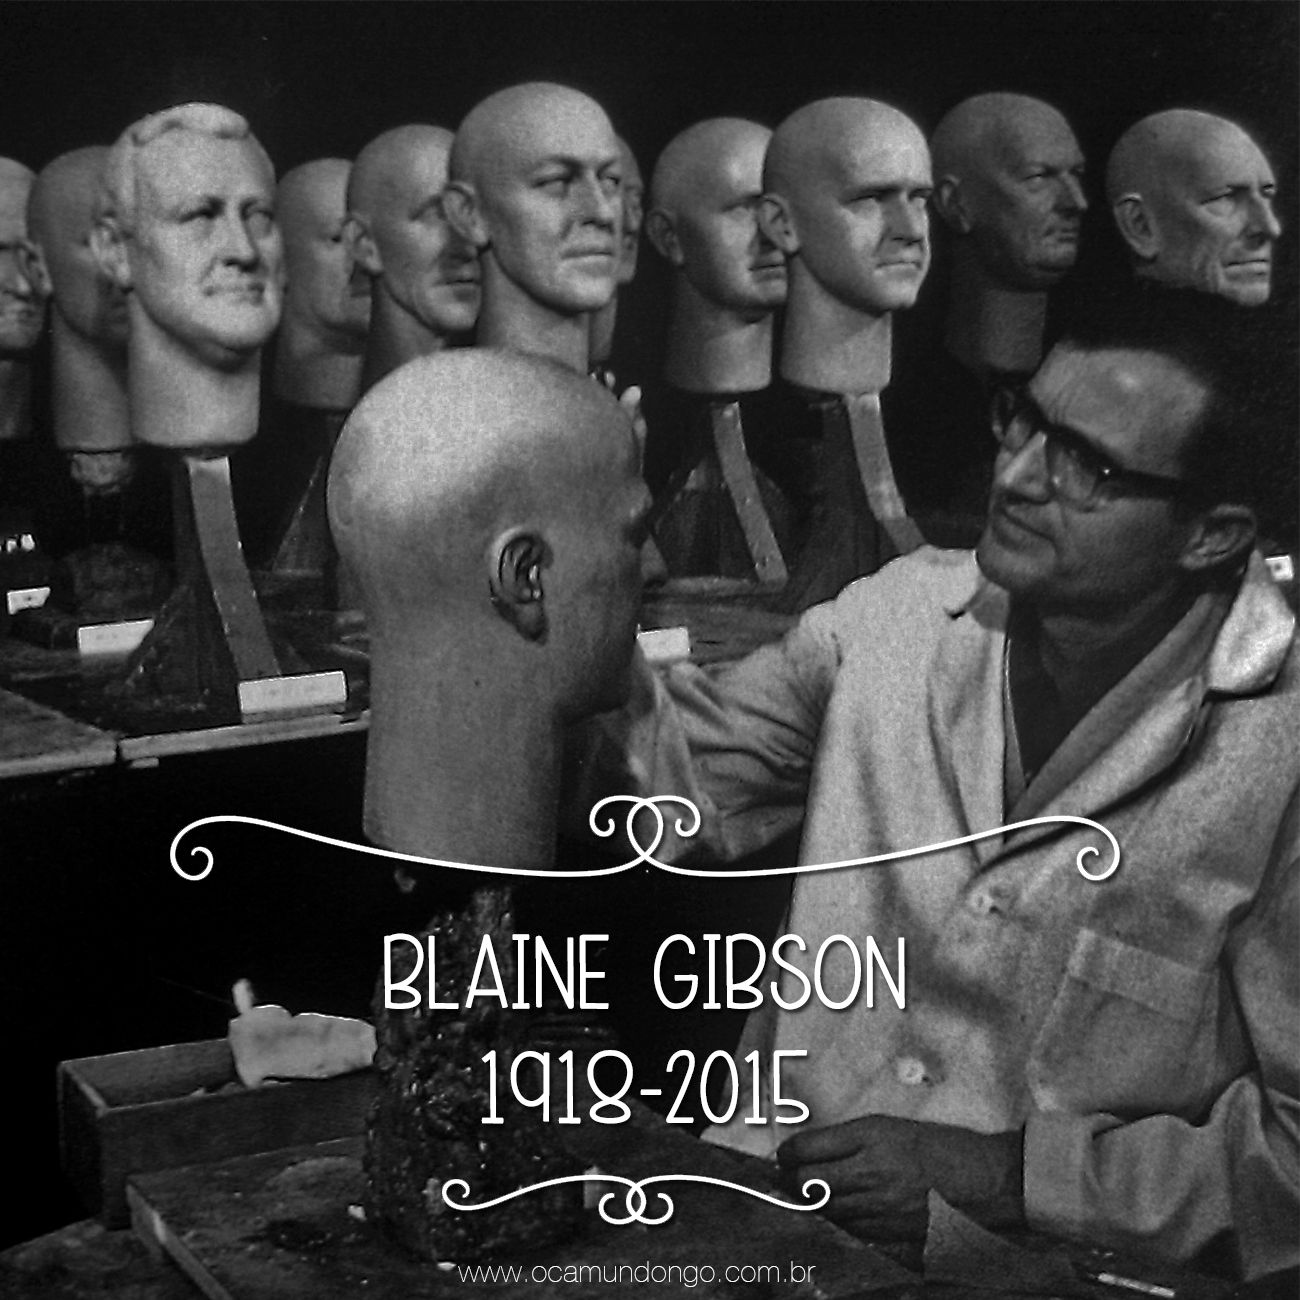 BLAINE GIBSON TOPO